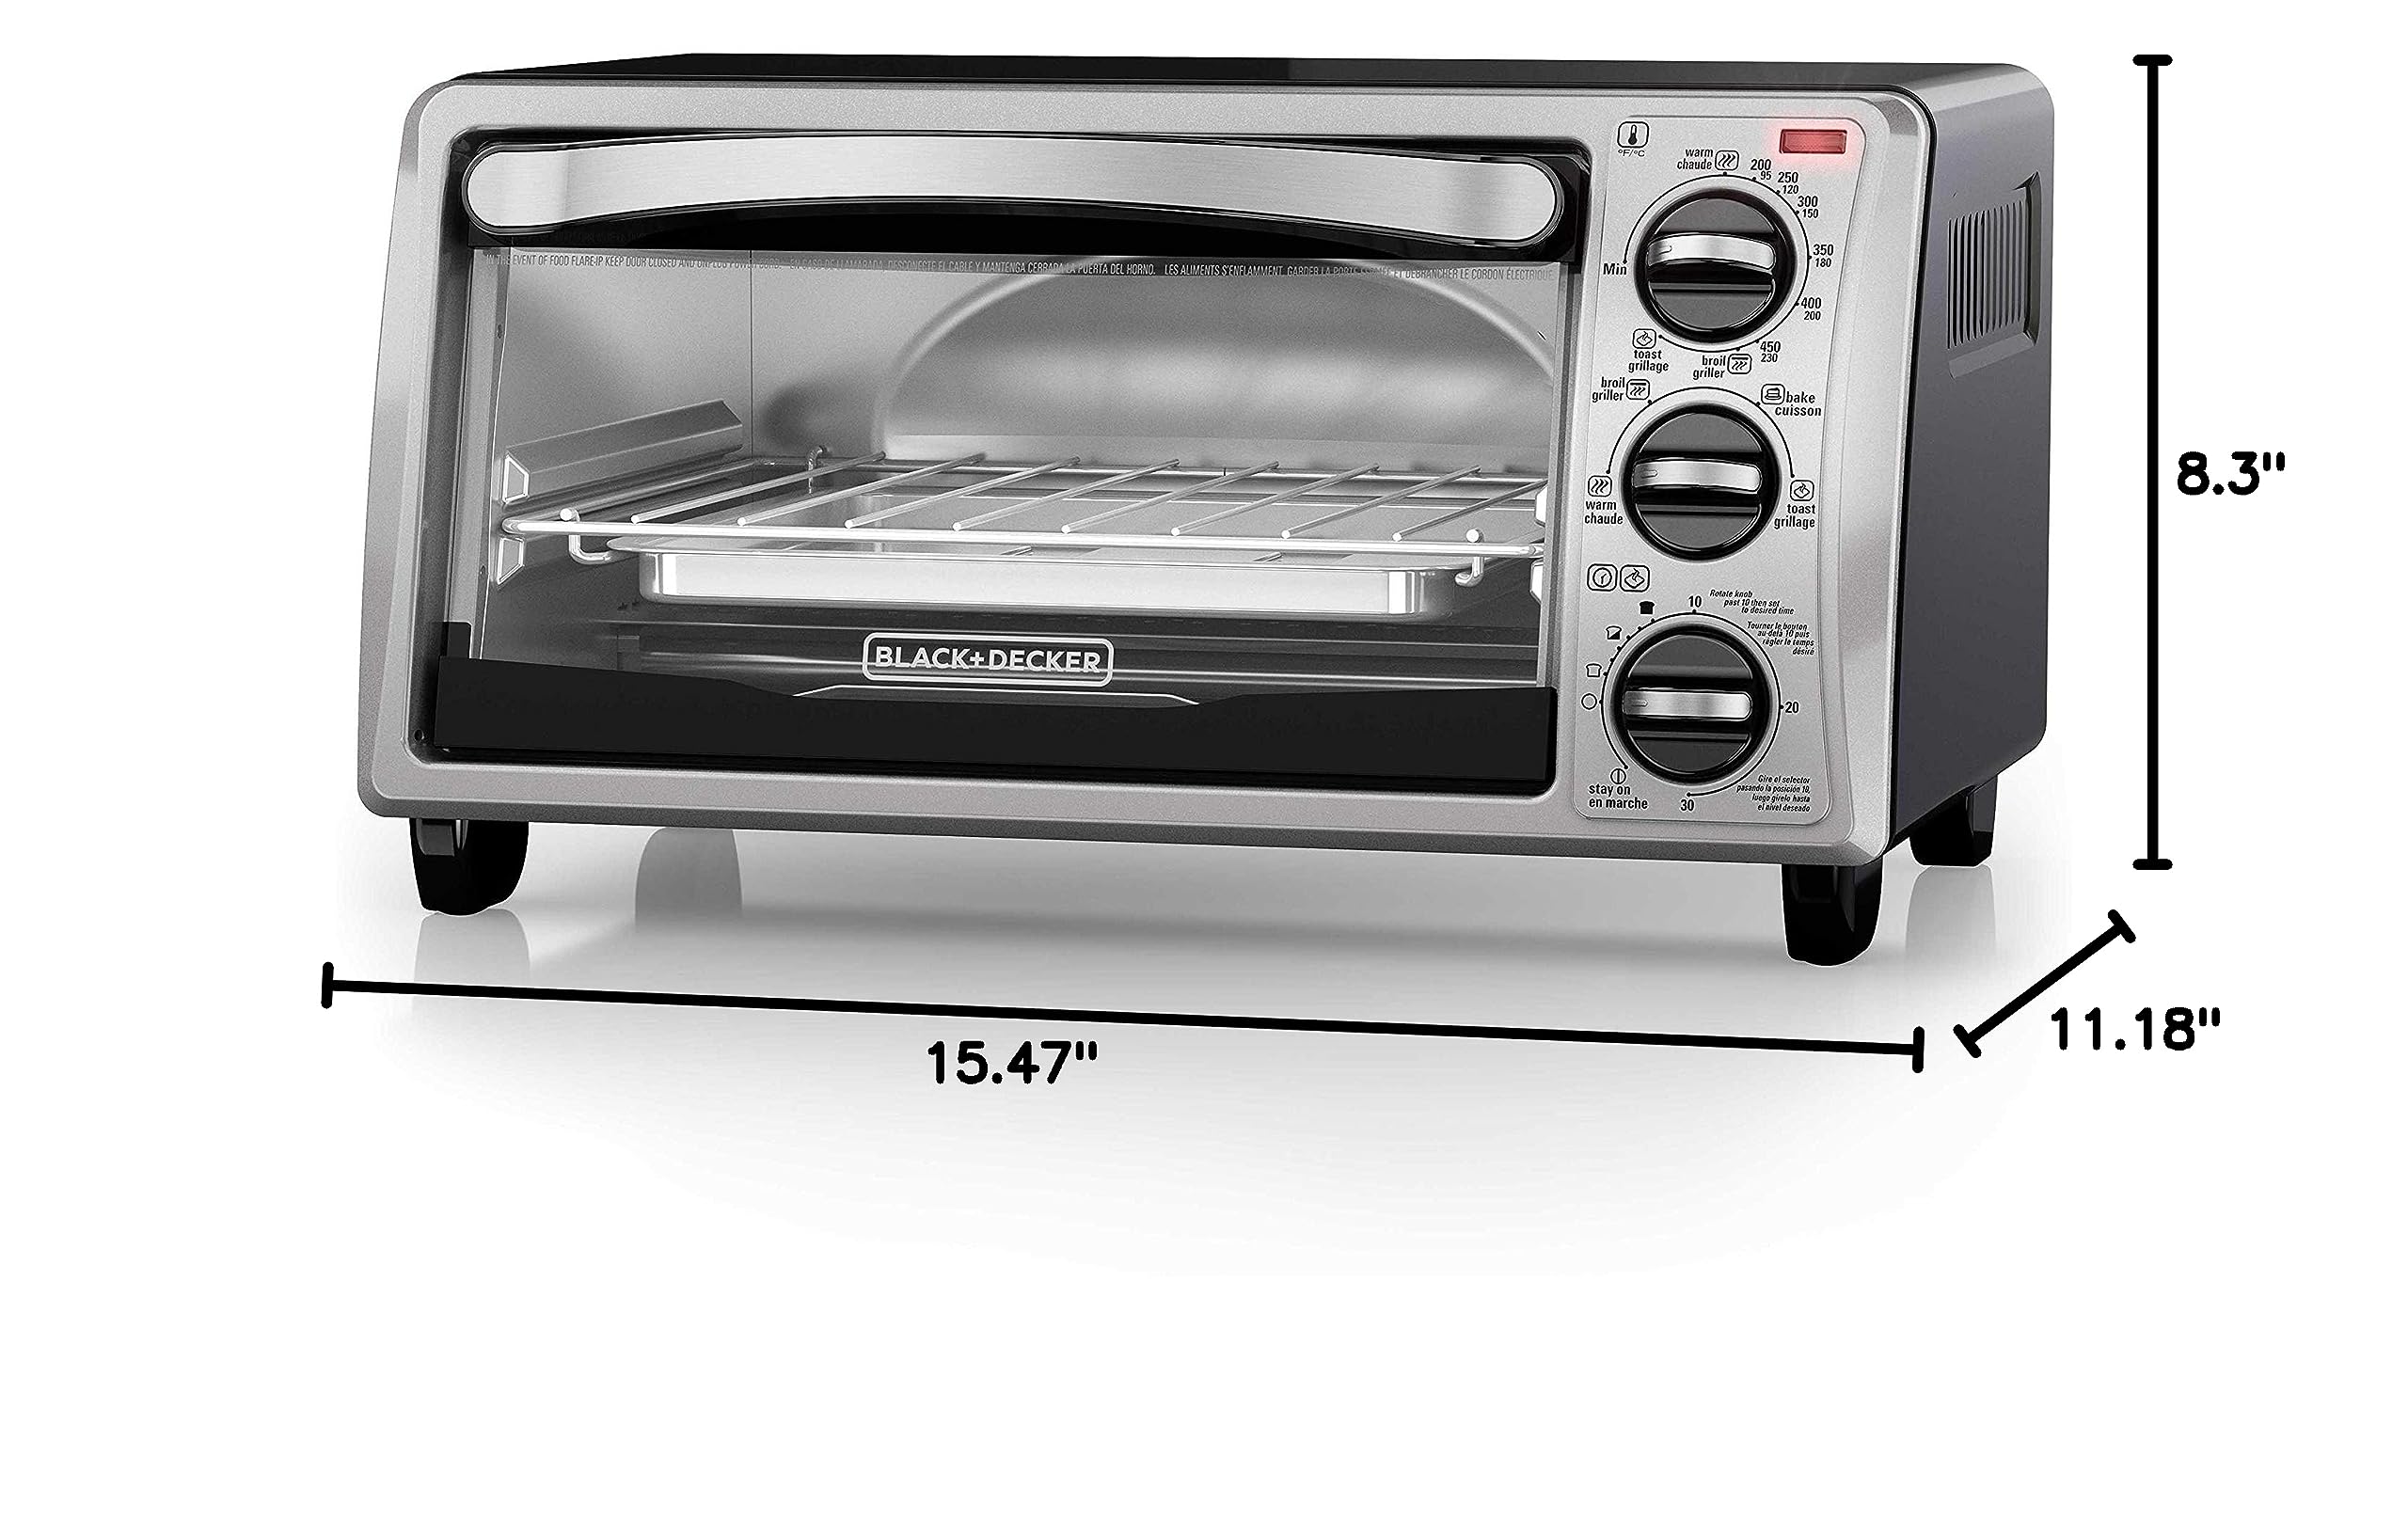 BLACK+DECKER 4-Slice EvenToast Toaster Oven, Bake, Broil, Toast, Keep Warm